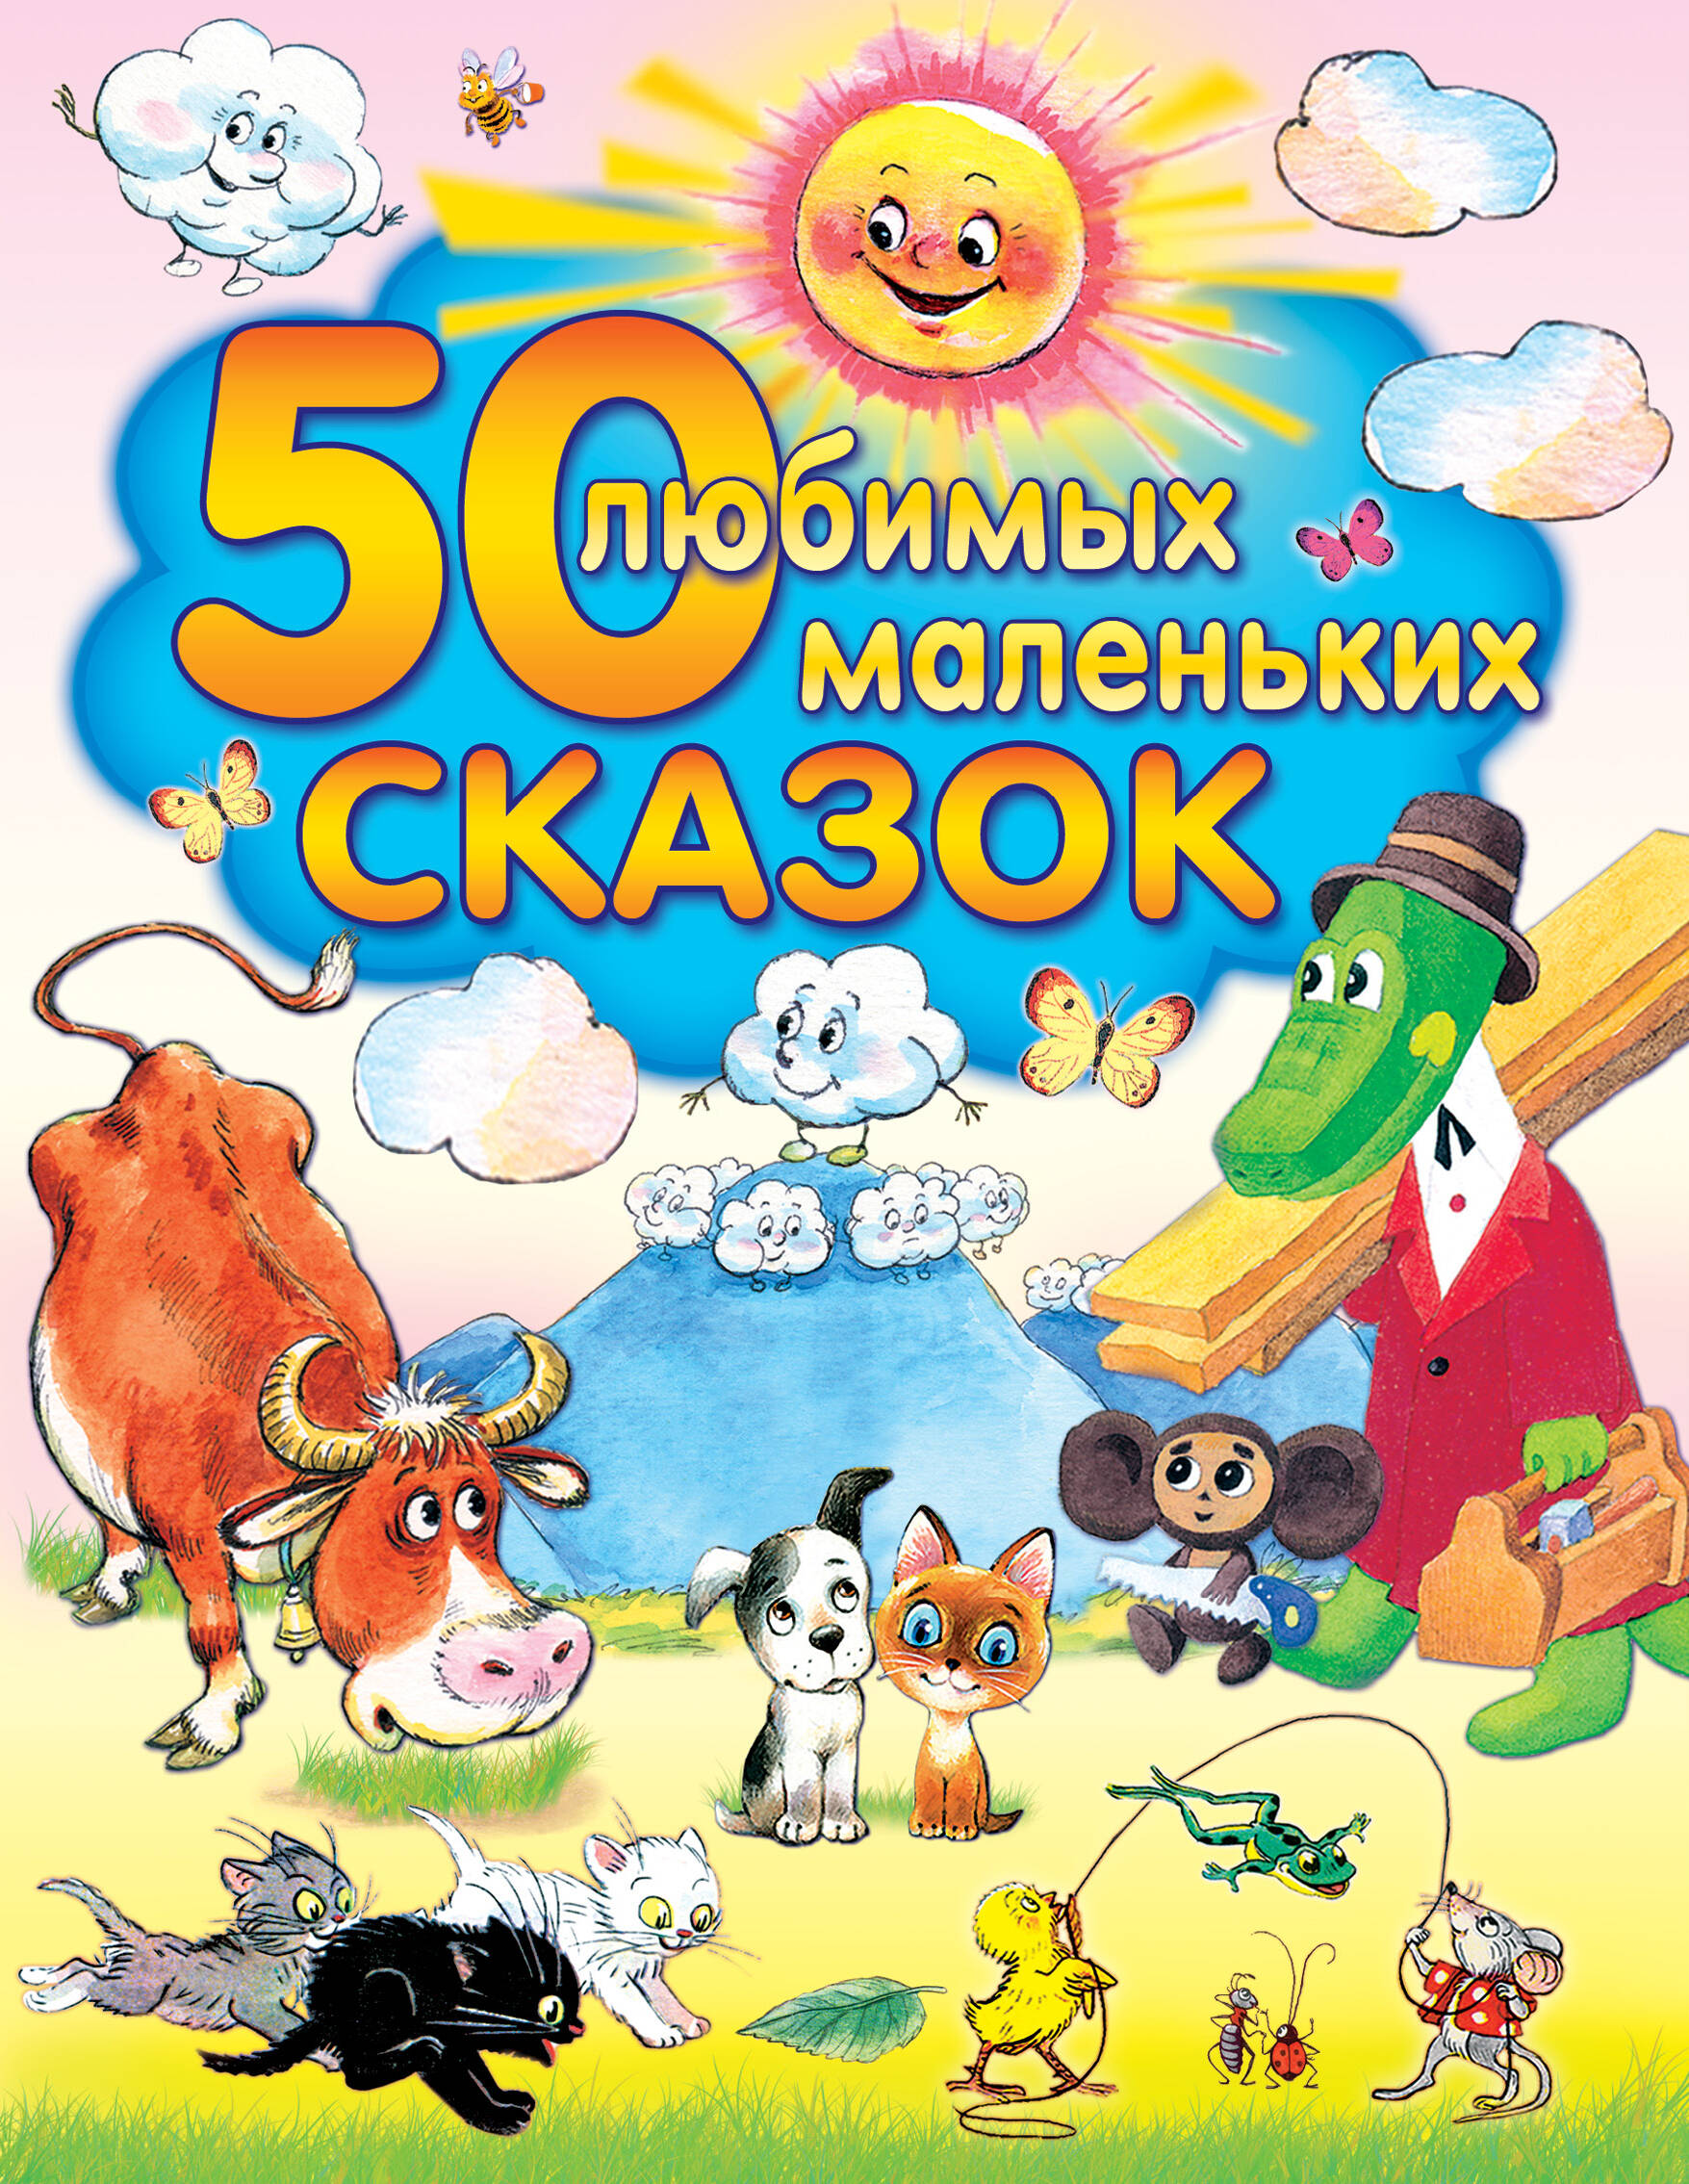 Толстой Алексей Николаевич 50 любимых маленьких сказок коненкина г ред 200 любимых маленьких сказок